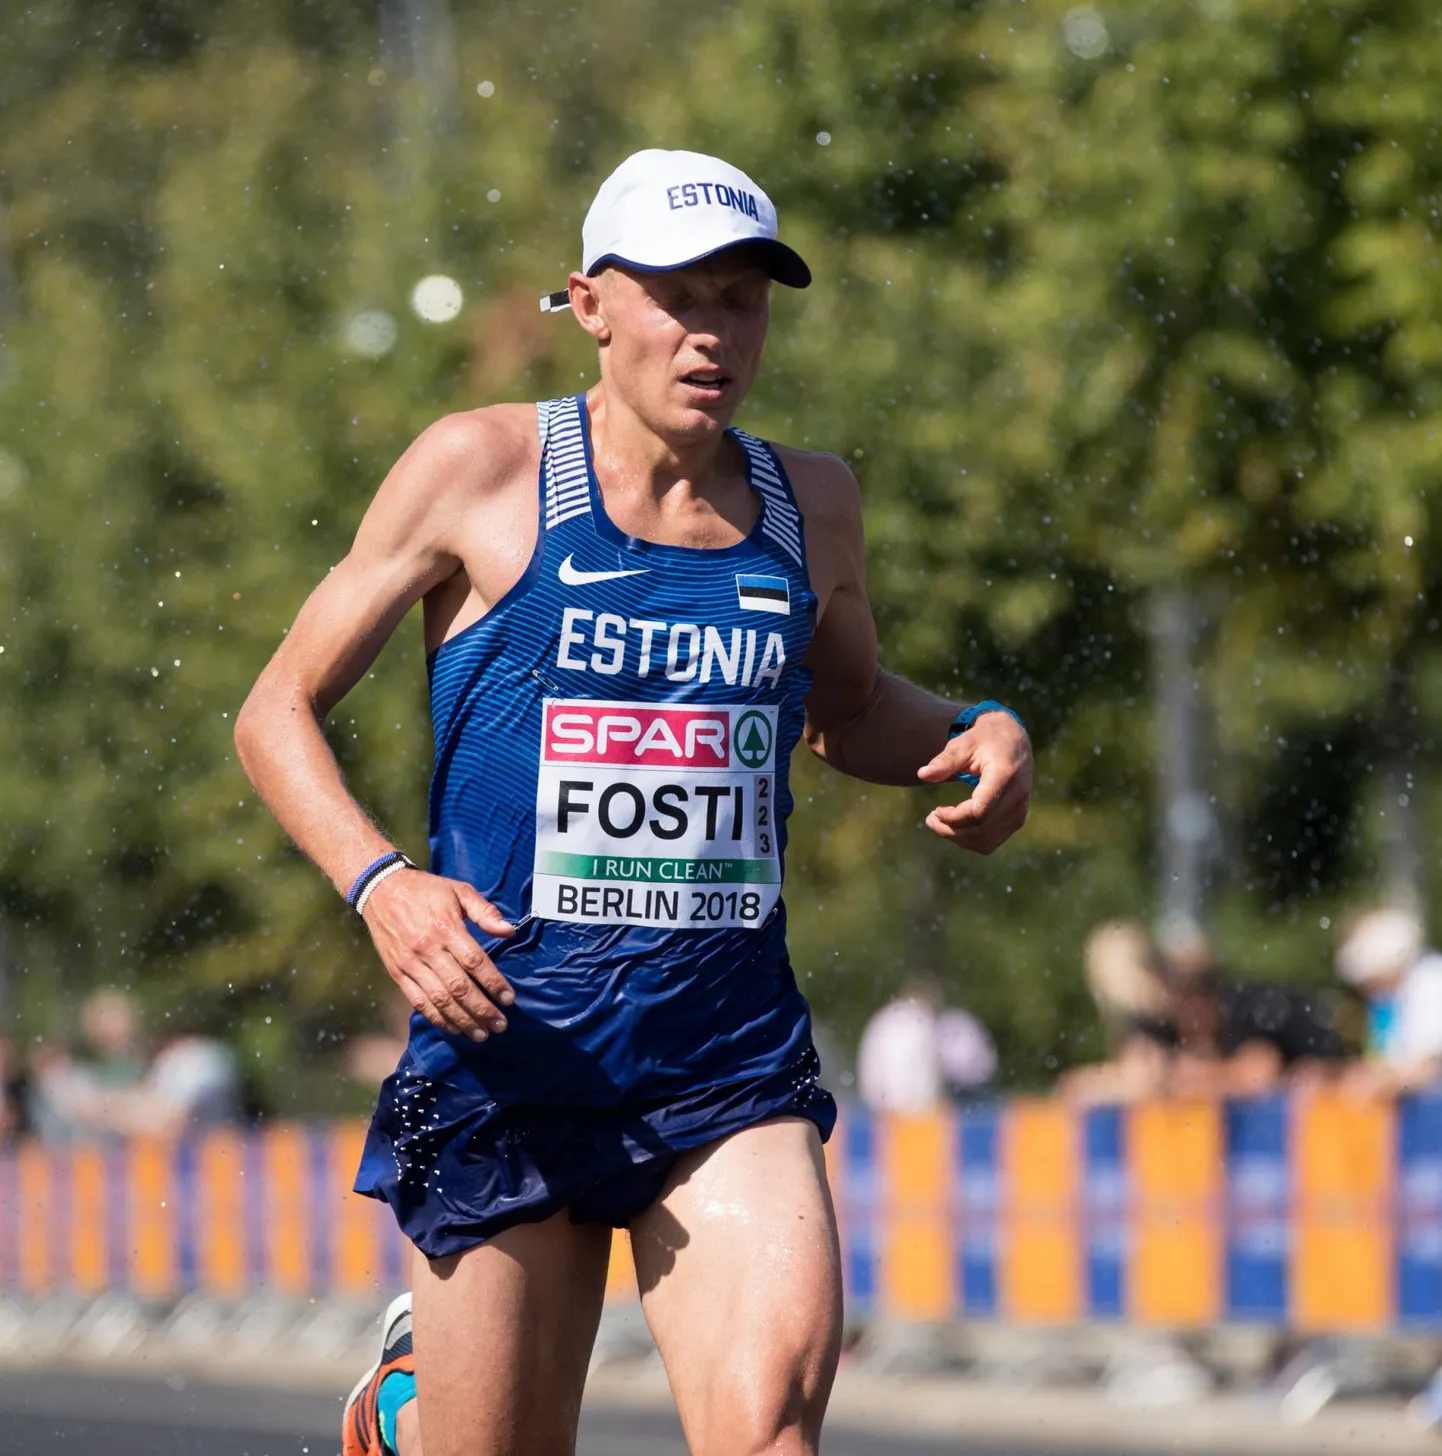 Eesti tippmaratoonar Roman Fosti sai Berliinis kergejõustiku EMil 17. koha, läbides 42 kilomeetrit pika jooksumaa isikliku rekordi lähedase ajaga.